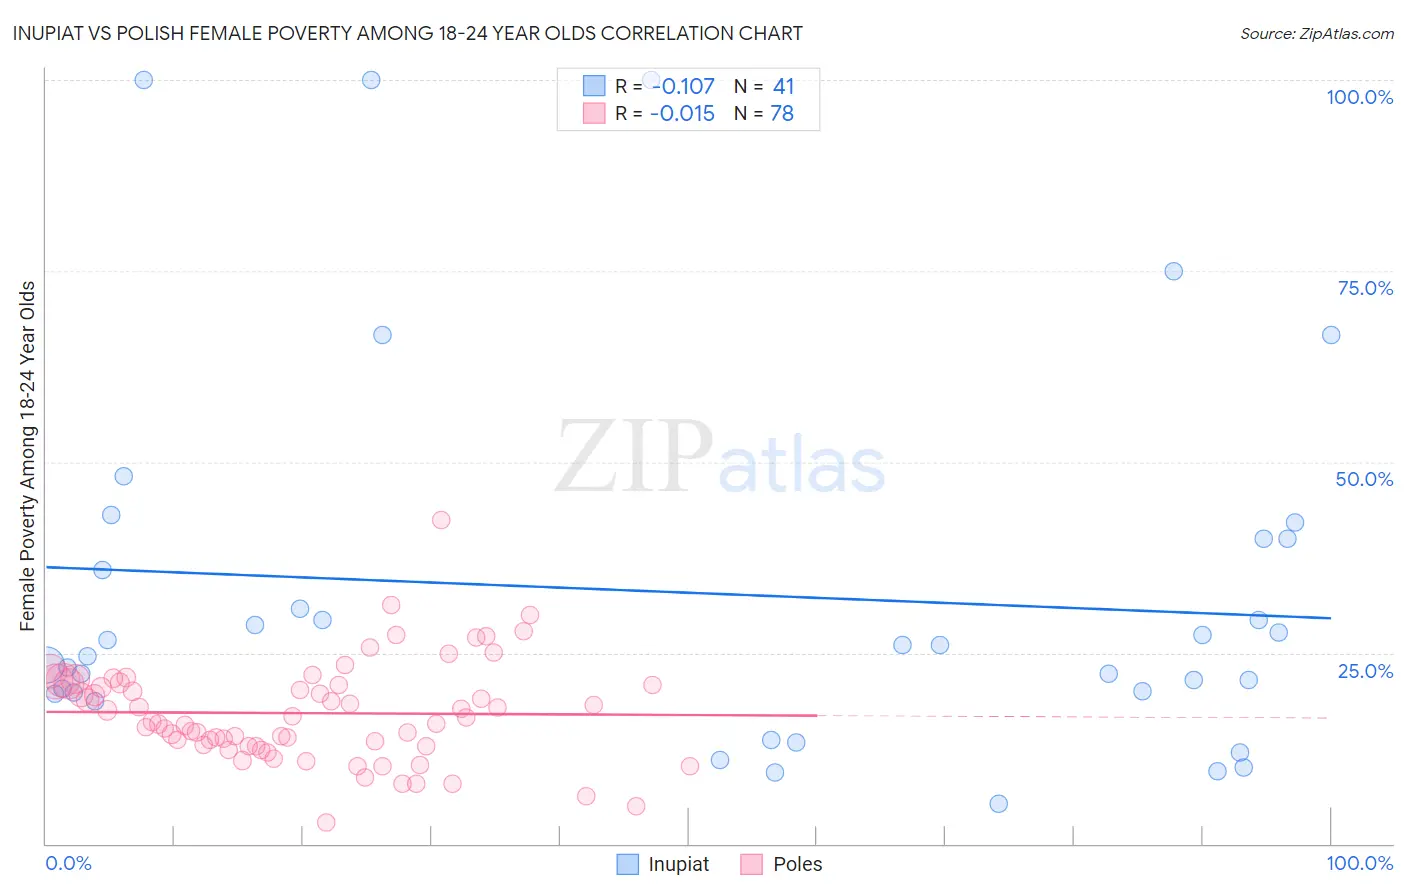 Inupiat vs Polish Female Poverty Among 18-24 Year Olds